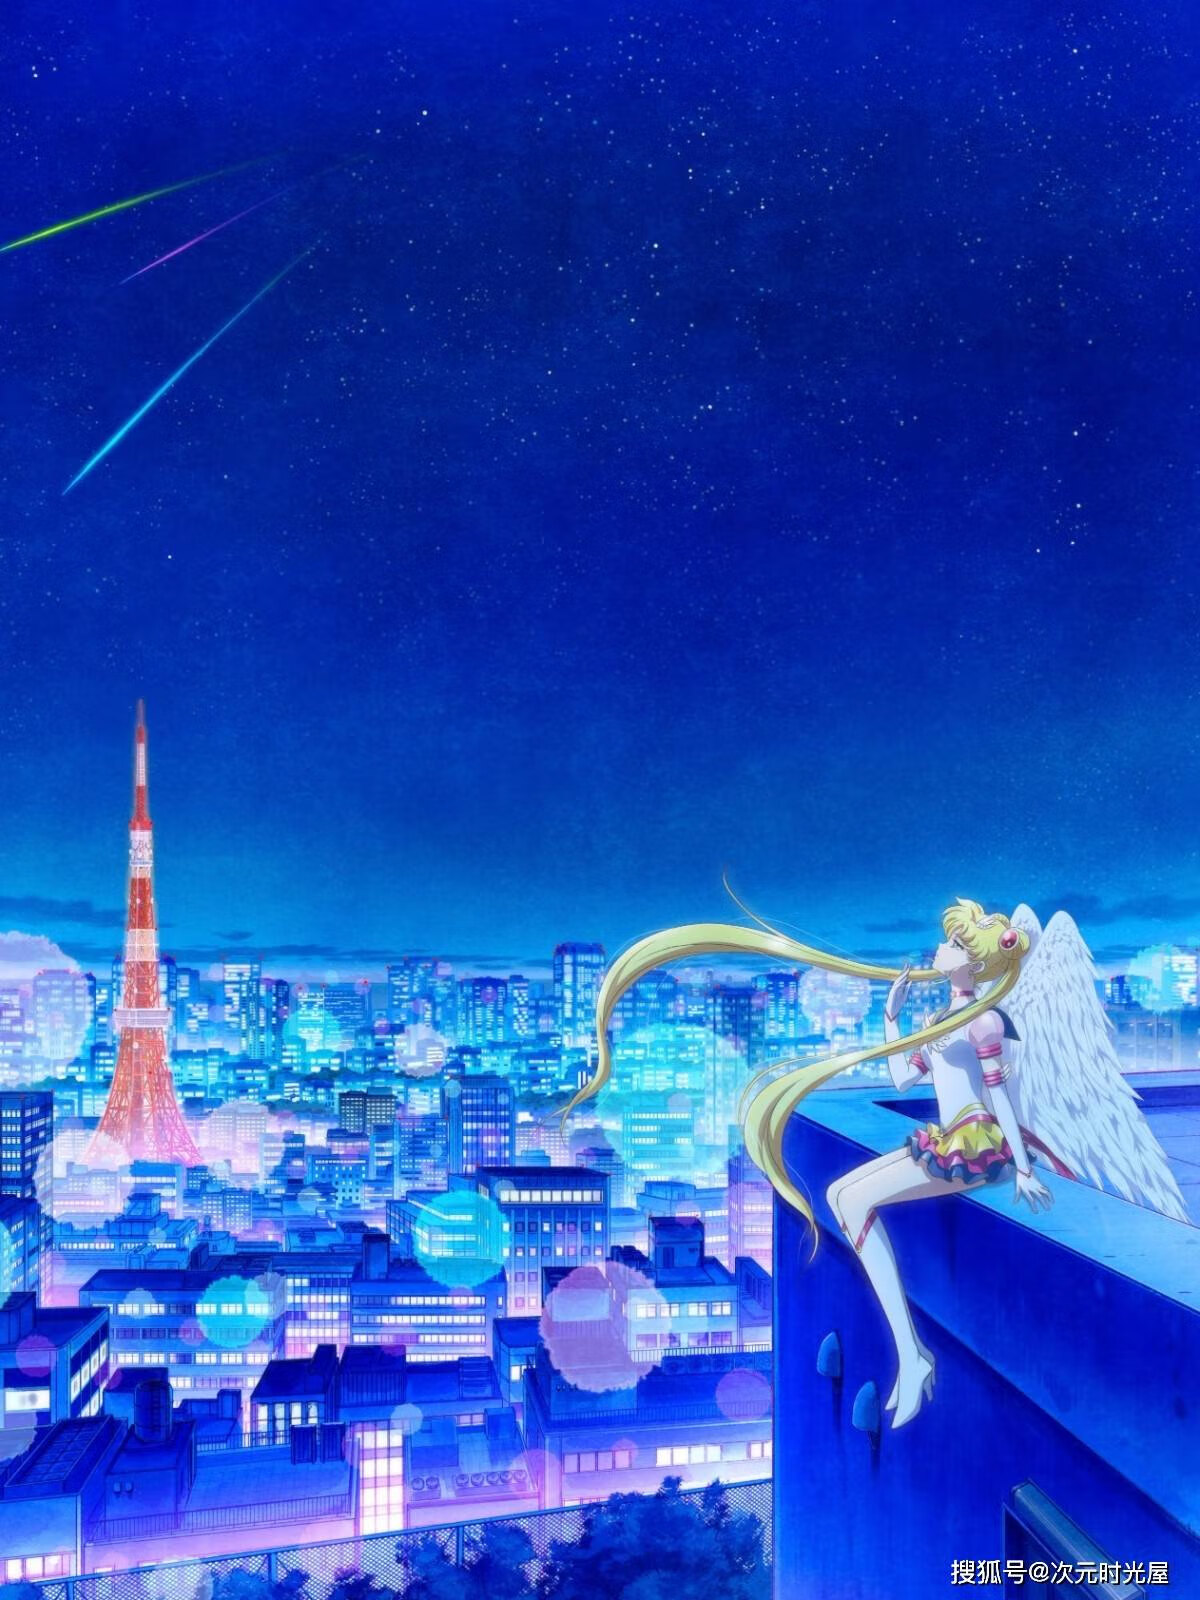 剧场版动画《美少女战士 Sailor Moon Cosmos》最终章故事将于2023年初夏上映